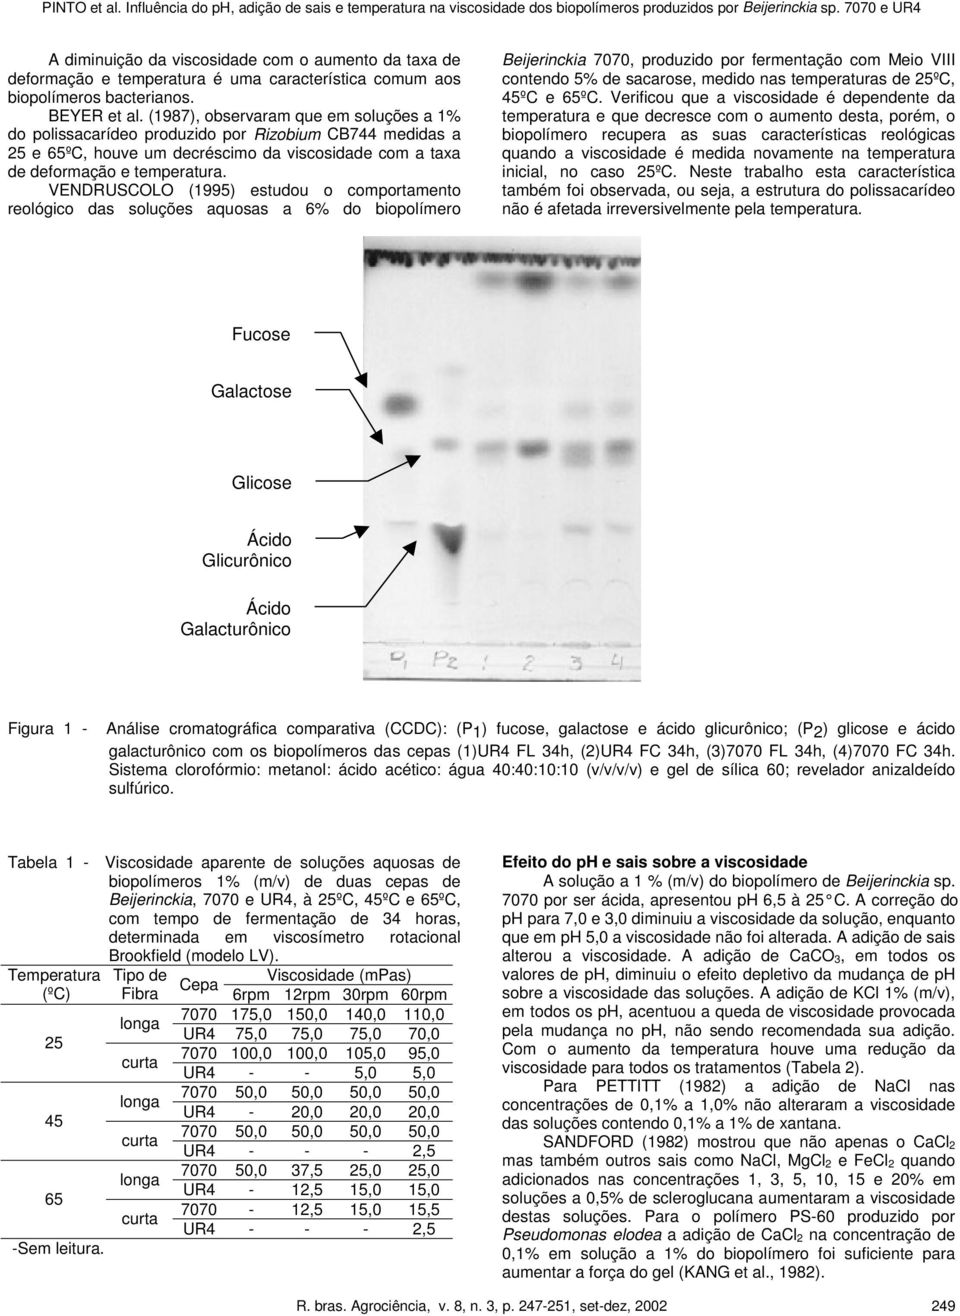 VENDRUSCOLO (1995) estudou o comportamento reológico das soluções aquosas a 6% do biopolímero Beijerinckia 7070, produzido por fermentação com Meio VIII contendo 5% de sacarose, medido nas